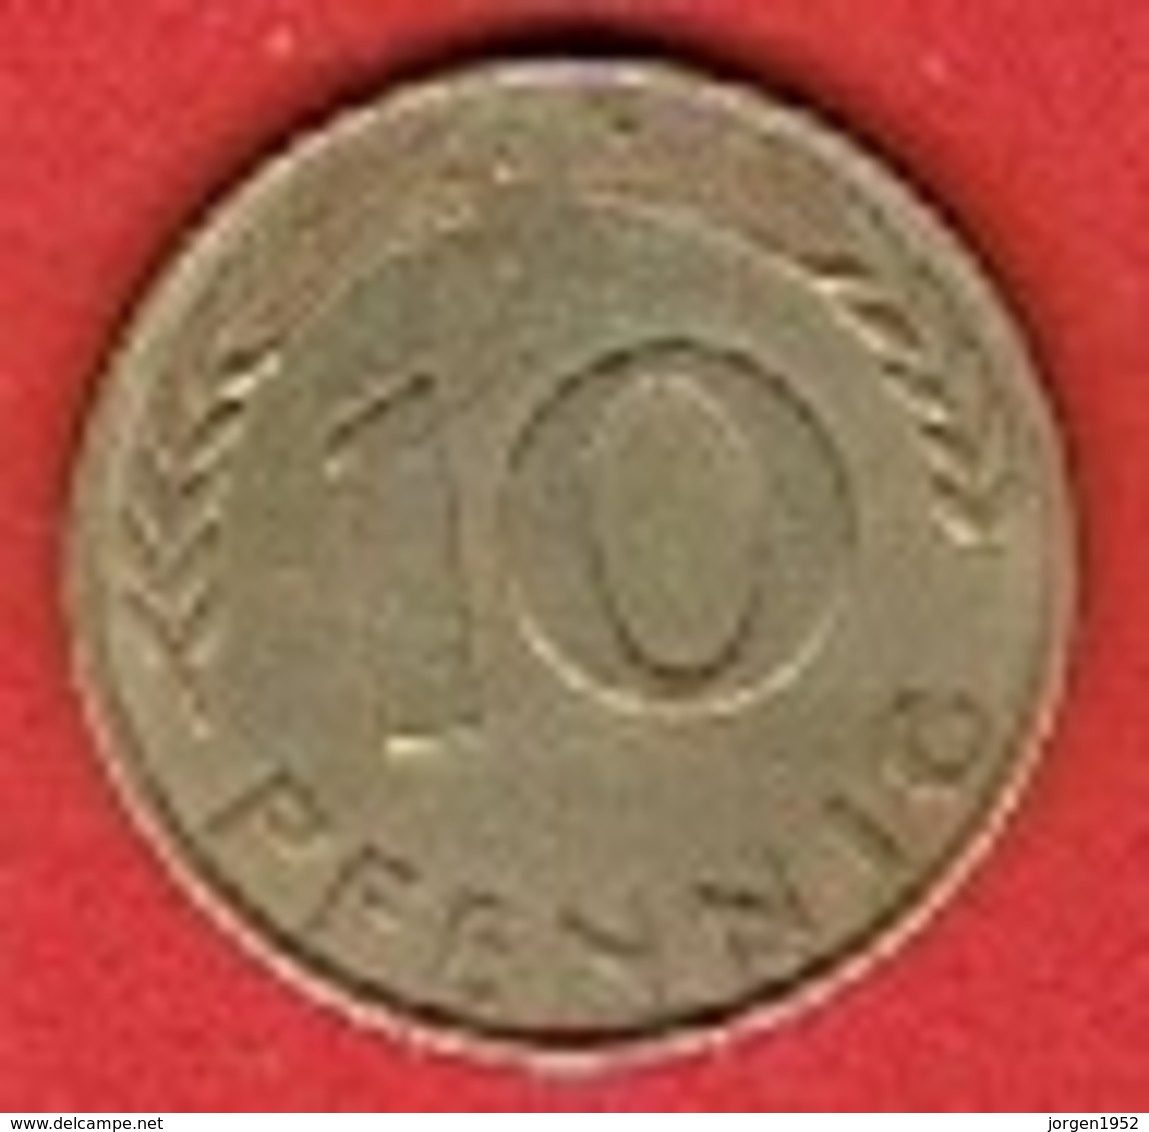 GERMANY # 10 PFENNING FROM 1950 - 10 Pfennig